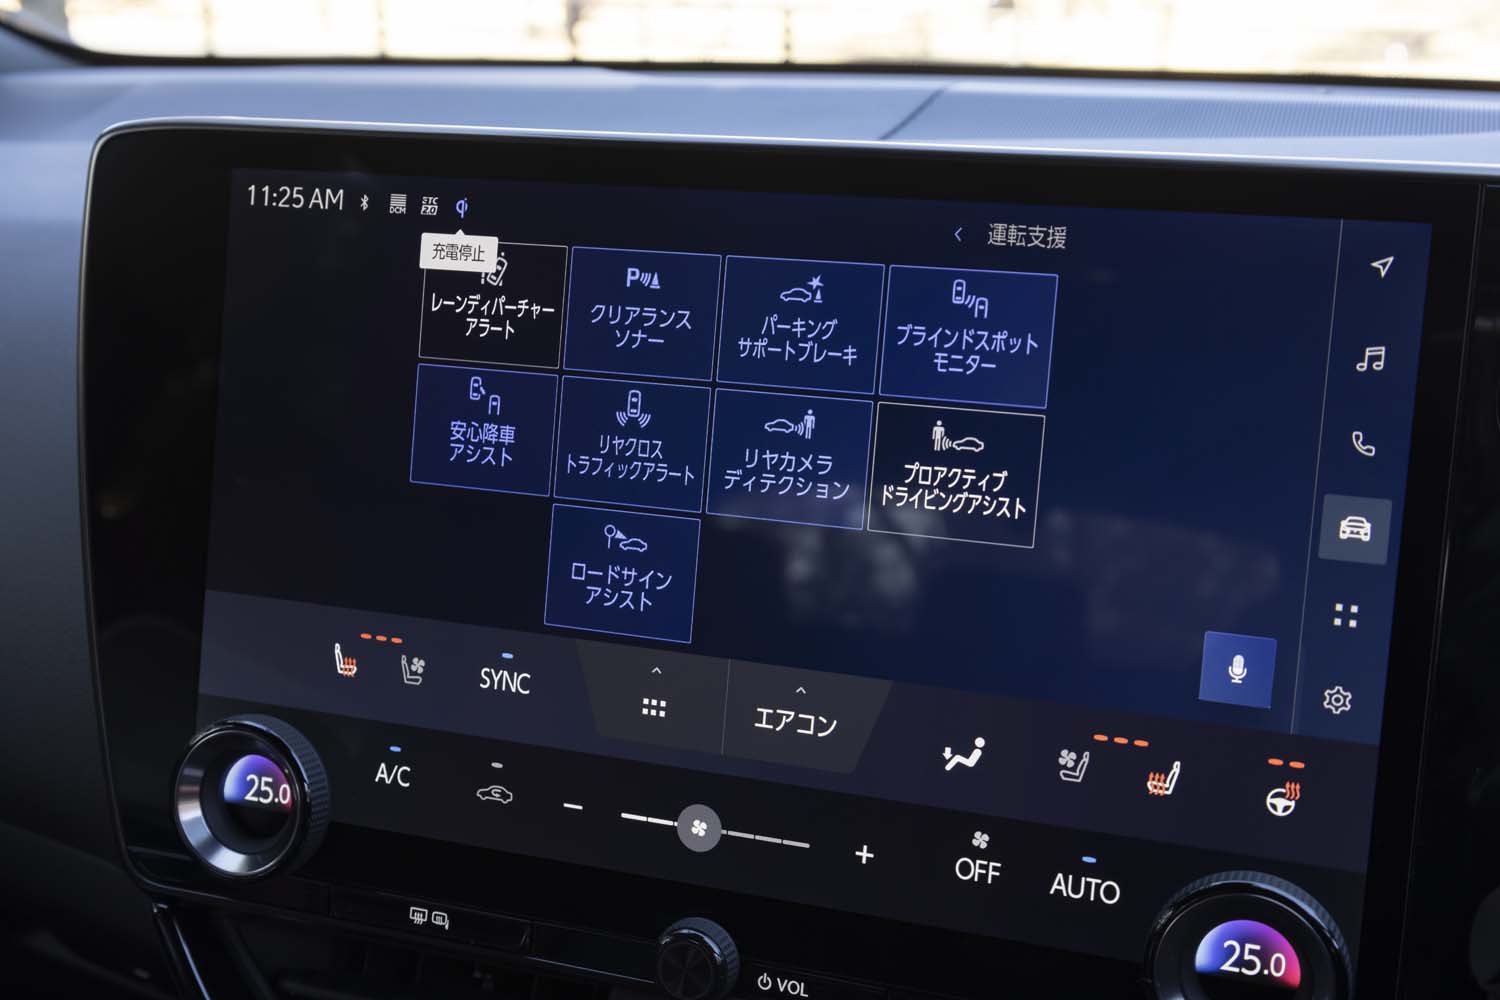 メインの表示項目を変更しても、ドライバー側に縦に並んだメニューと、下部の空調の操作系は常時表示される。エアコンの温度設定用のダイヤルが残されているのが見識だ。